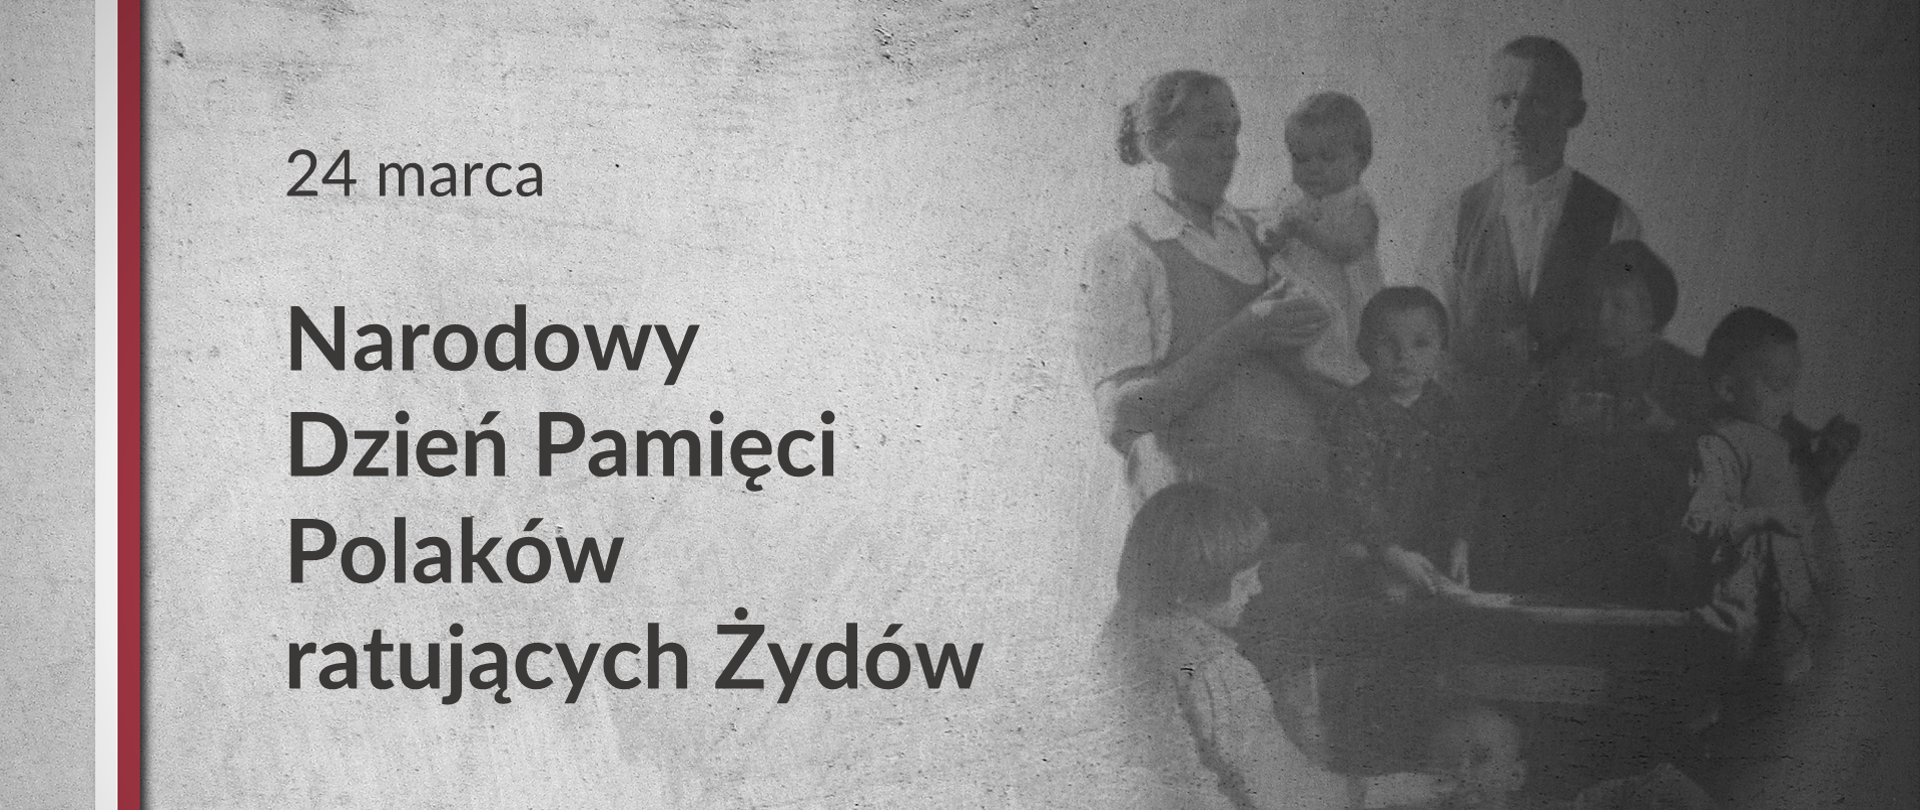 Grafika z tekstem: Narodowy Dzień Pamięci Polaków ratujących Żydów – 24 marca. Obok zdjęcie rodziny Ulmów.